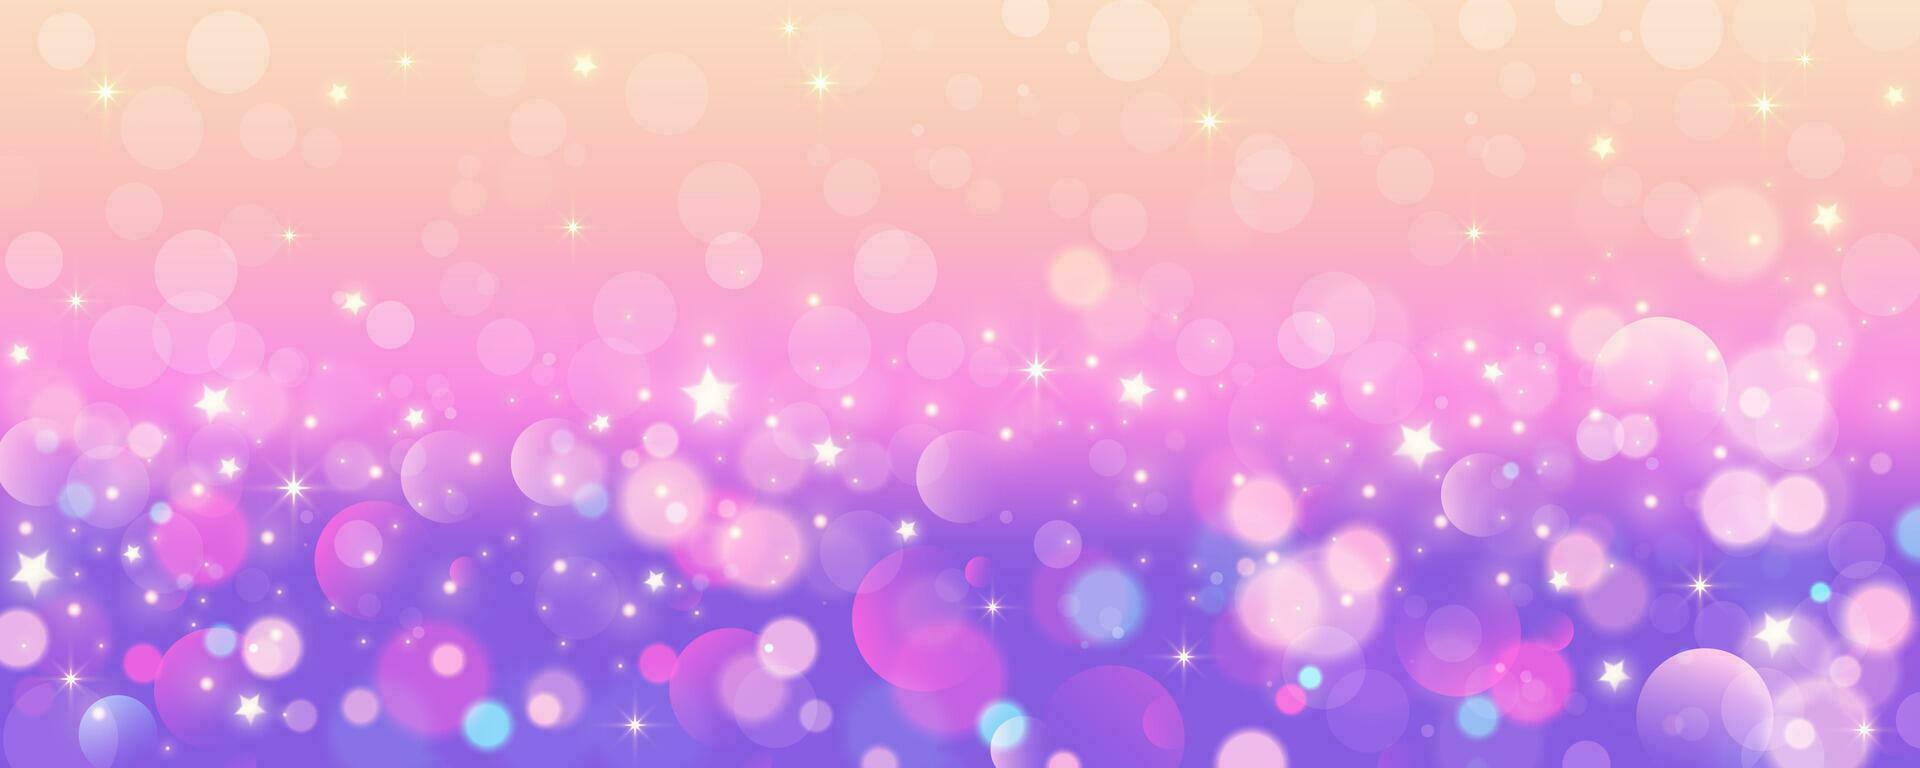 lila Einhorn Hintergrund. Pastell- Aquarell Himmel mit funkeln Sterne und Bokeh. Fantasie Galaxis mit holographisch Textur. Magie Marmor Raum. Vektor